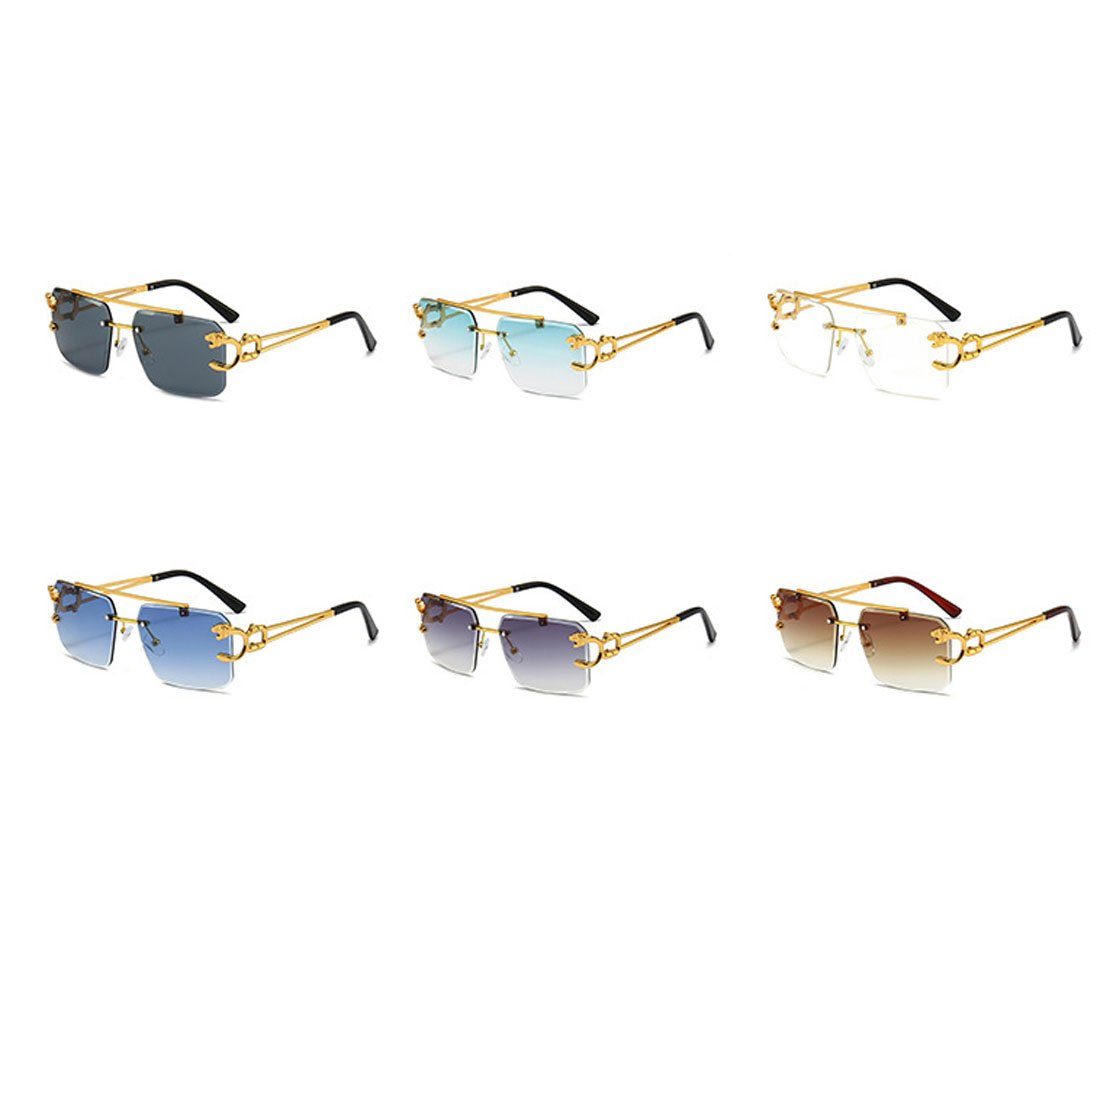 DÖRÖY für blau Damen-Retro-Sonnenbrille ohne Rand, draußen Herren-Sonnenbrille Sonnenbrille